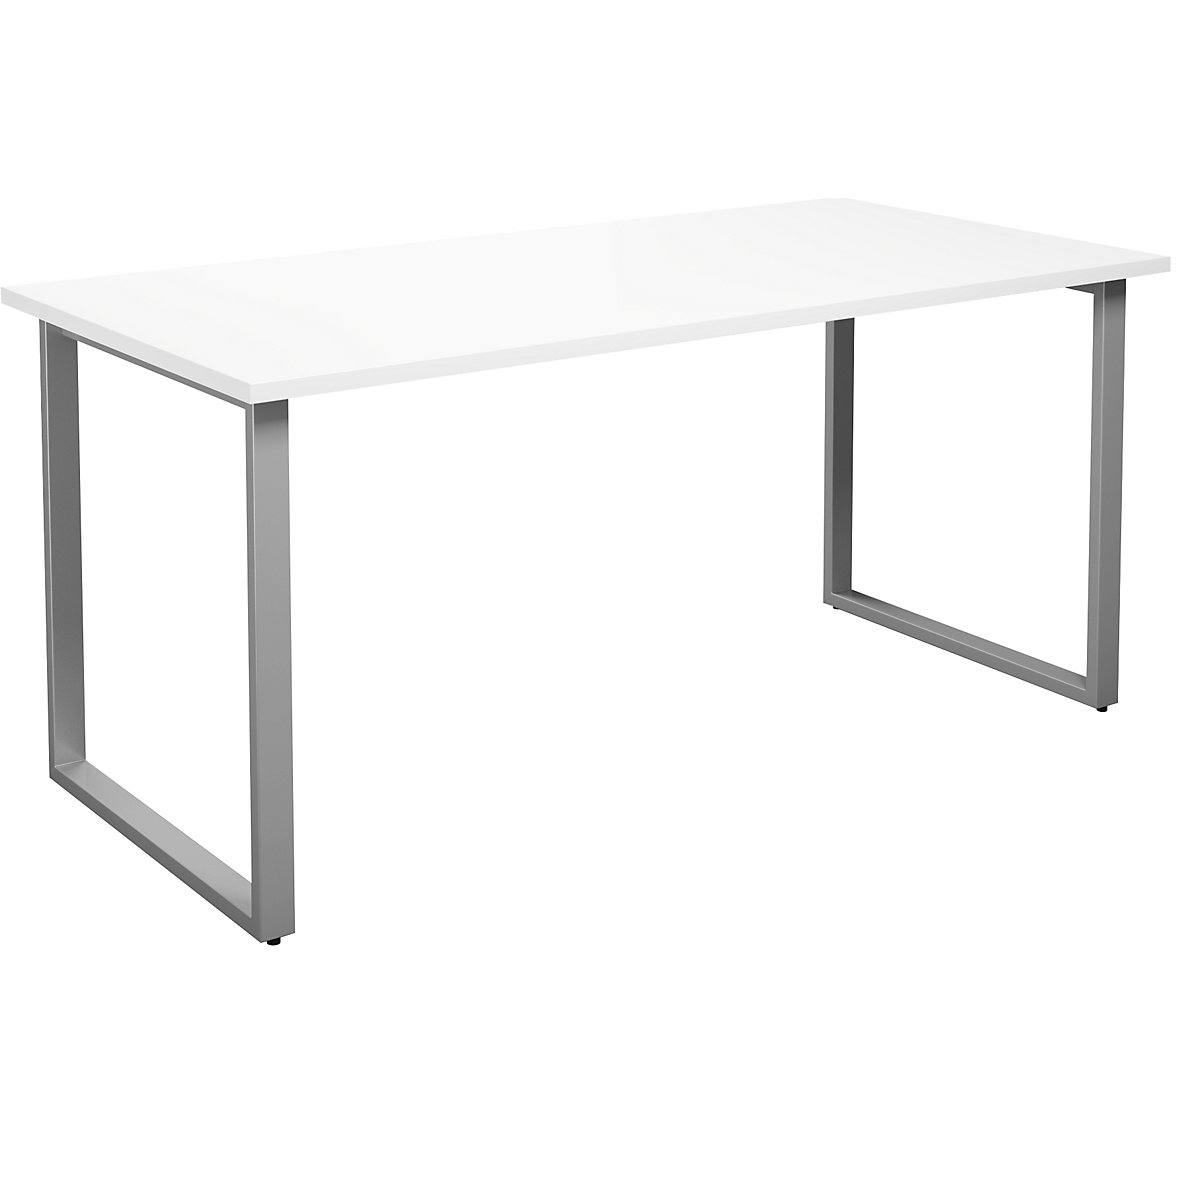 DUO-O multi-purpose desk, straight tabletop, WxD 1600 x 800 mm, white, silver-6